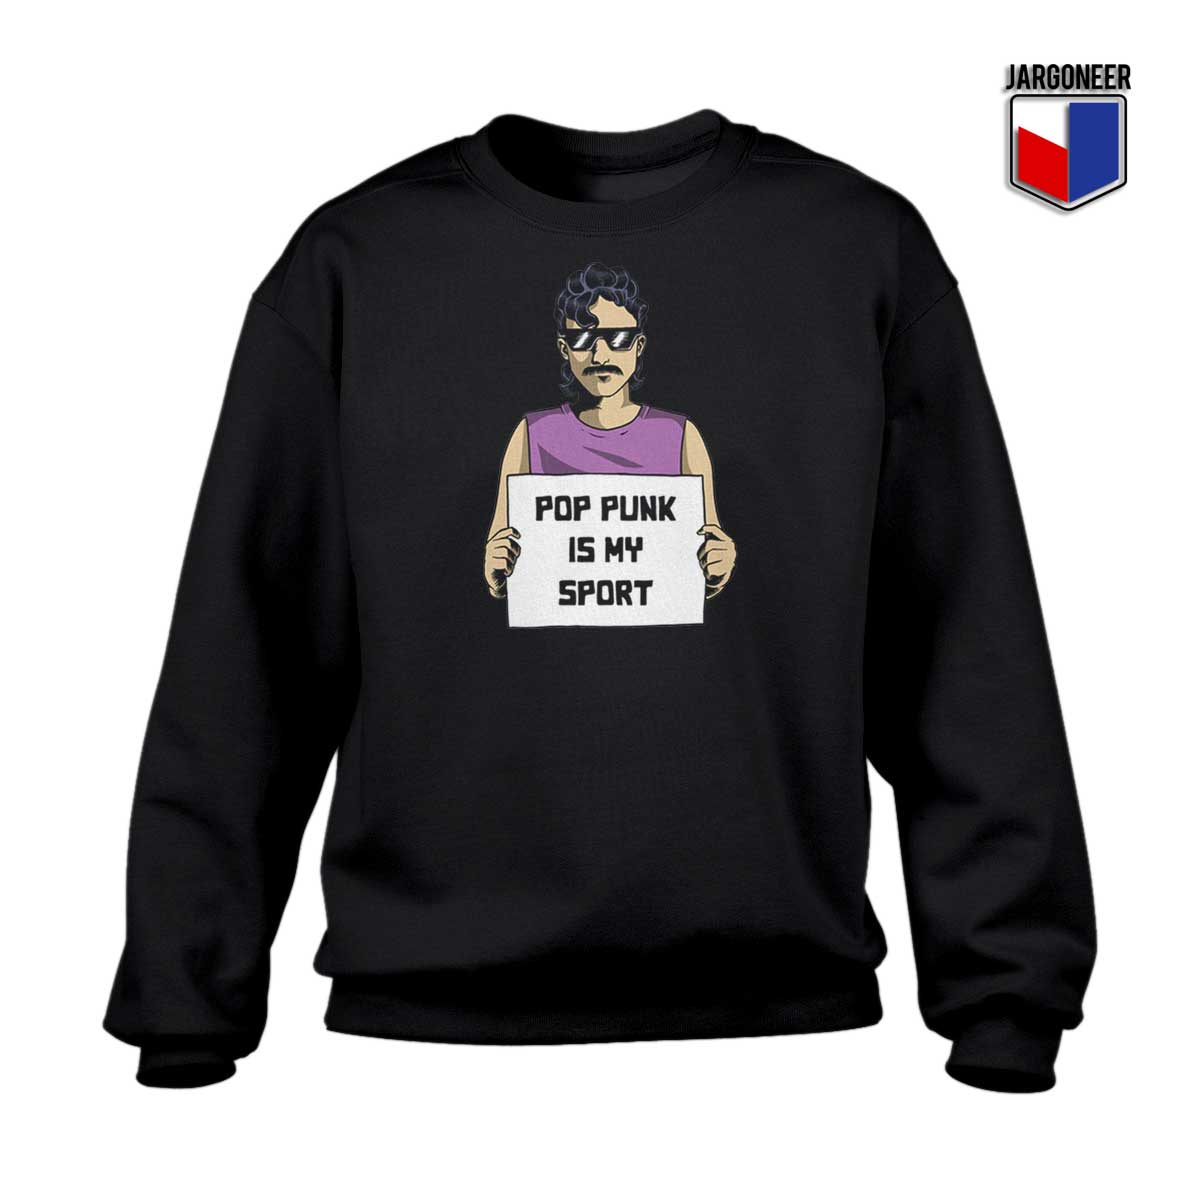 Pop Punk Is My Sport Sweatshirt - Shop Unique Graphic Cool Shirt Designs